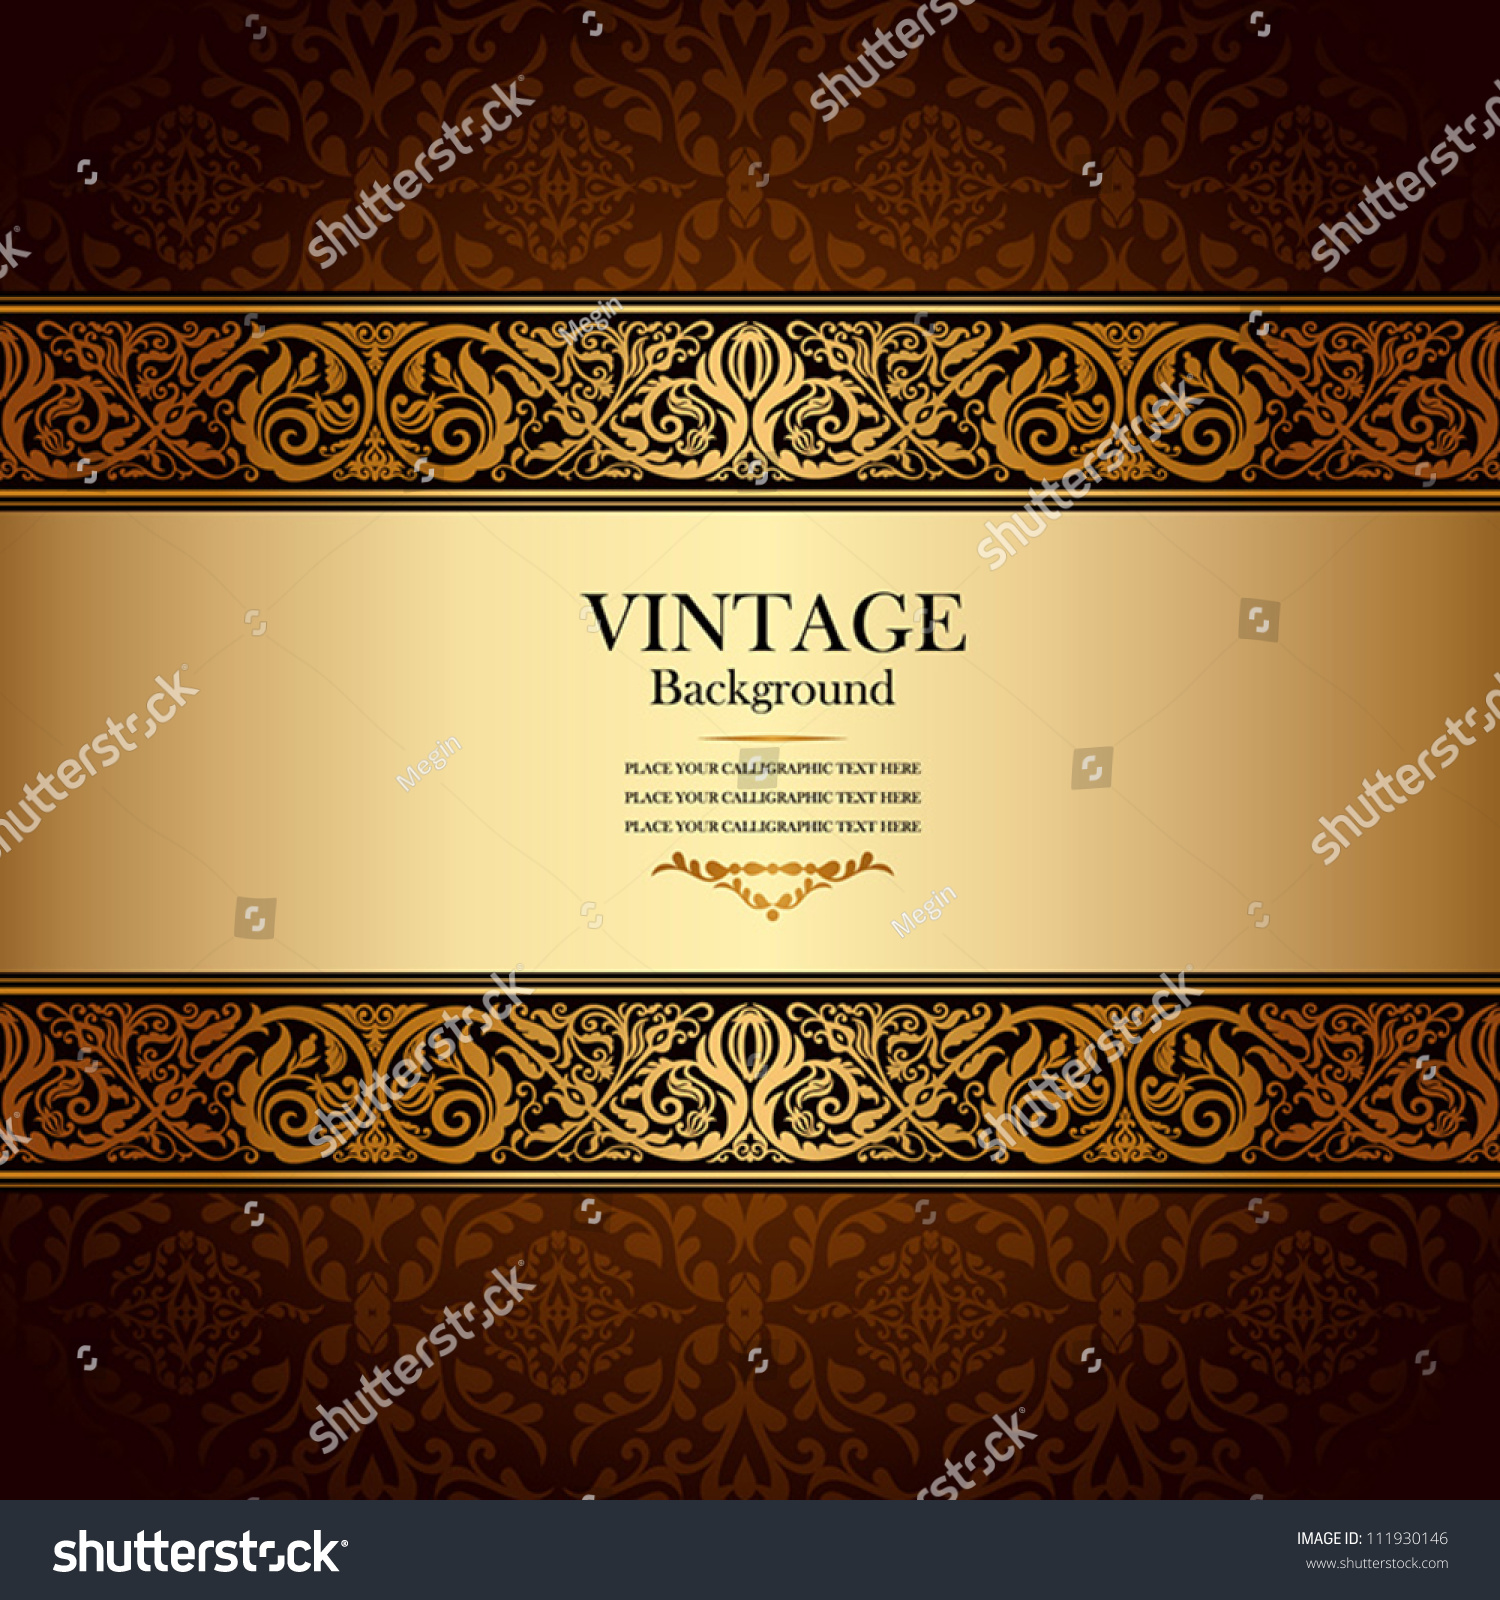 ビンテージ背景 アンティーク ビクトリア時代の金色の装飾 バロック色の枠 美しい古い紙 カード 装飾的な表紙 ラベル デザイン用花柄高級装飾柄テンプレート のベクター画像素材 ロイヤリティフリー